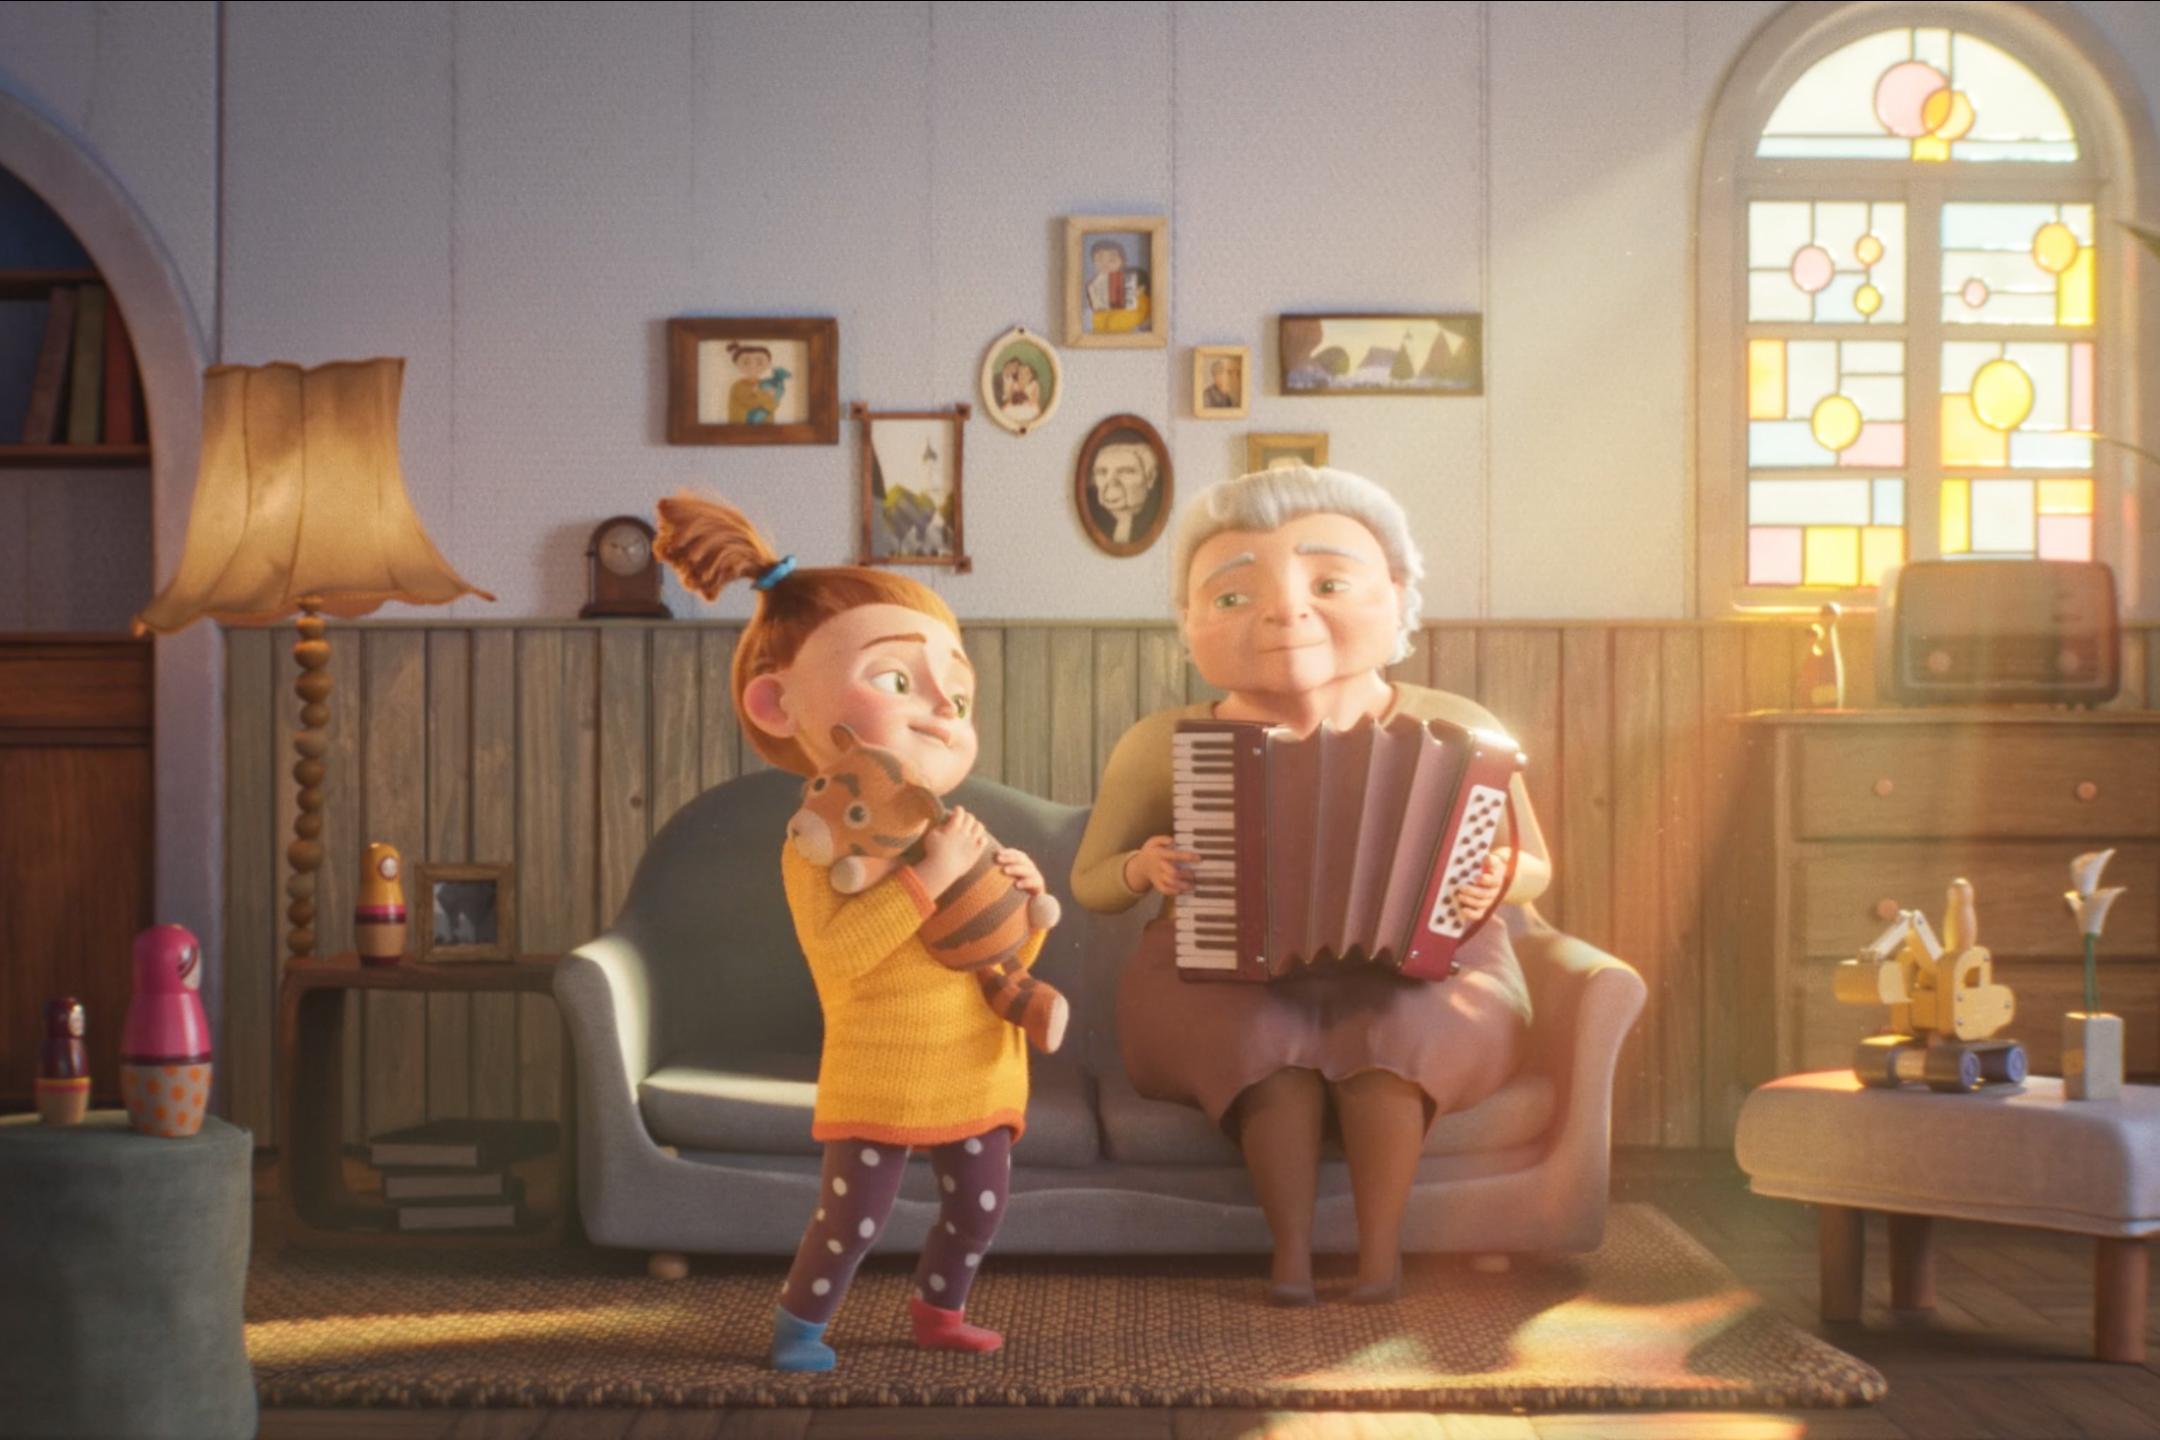 Filmstill aus einem Animationsfilm: Eine ältere Frau mit grauen Haaren sitzt auf einem Sofa in einem Wohnzimmer und spielt Akkordeon. Vor dem Sofa steht ein Mädchen mit roten Haaren und einem Zopf. Es hält ein Kuscheltier im Arm. Die Frau und das Mädchen haben beide ihren Kopf leicht zur Seite geneigt und lächeln sich an.